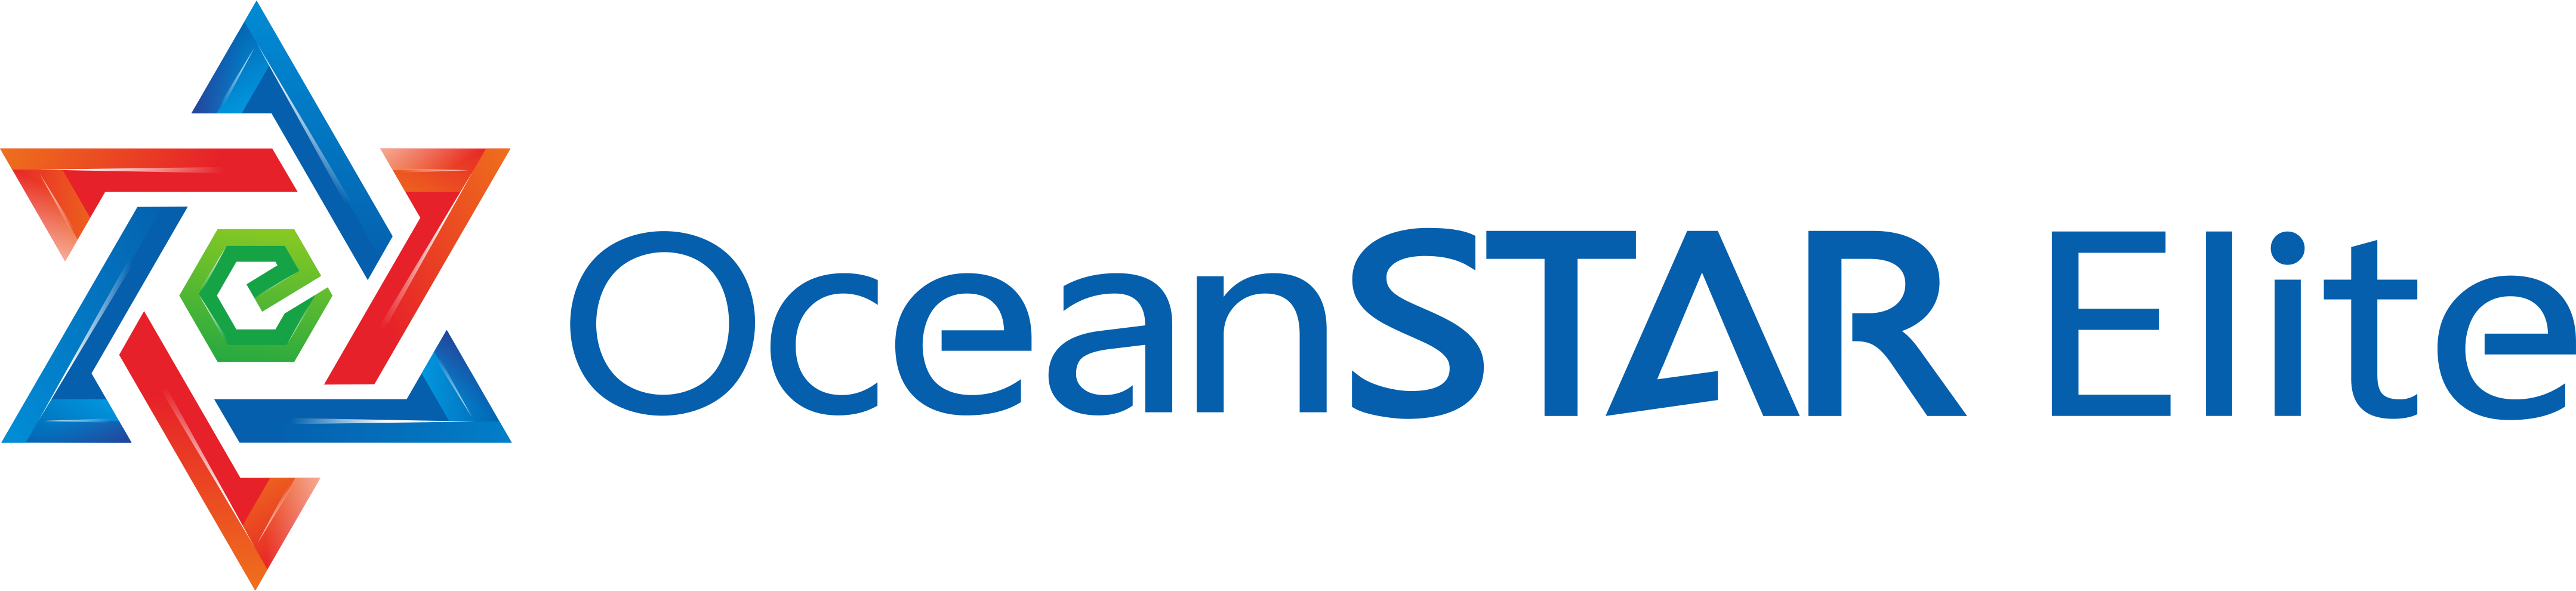 OceanSTAR Elite Group of Companies